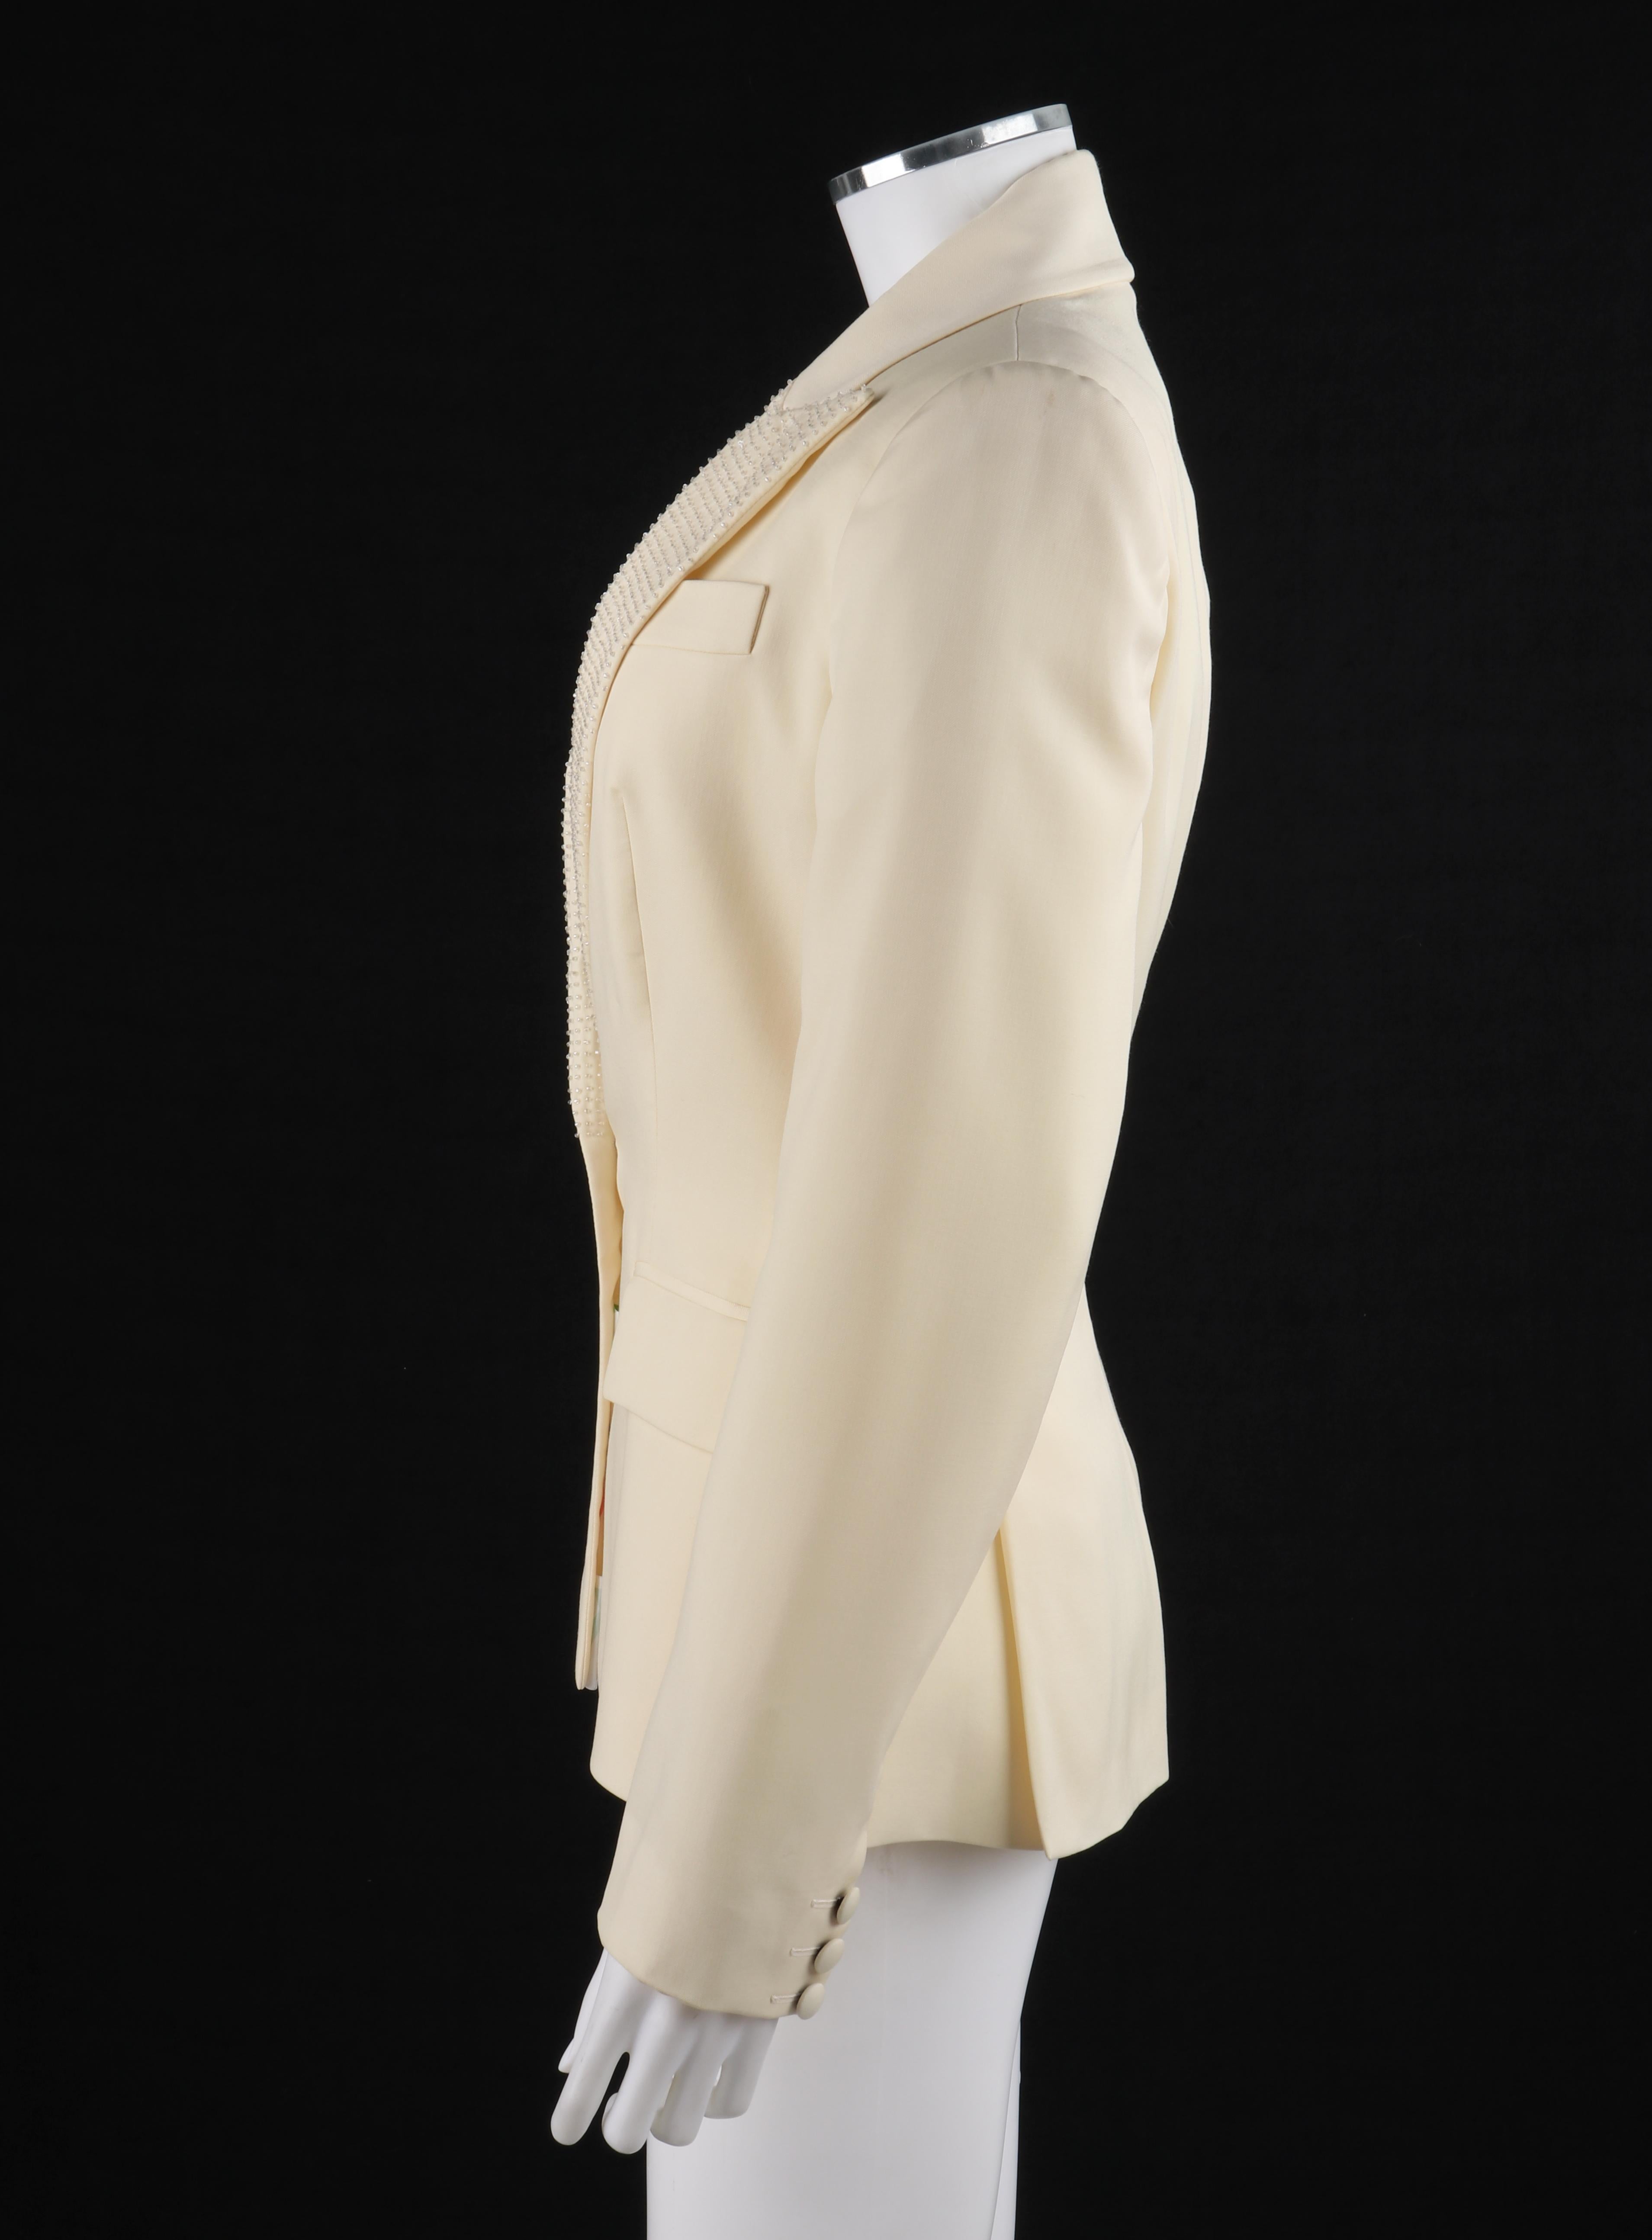 Beige ALEXANDER McQUEEN S/S 1998 “Golden Shower” Light Yellow Beaded Blazer Jacket For Sale